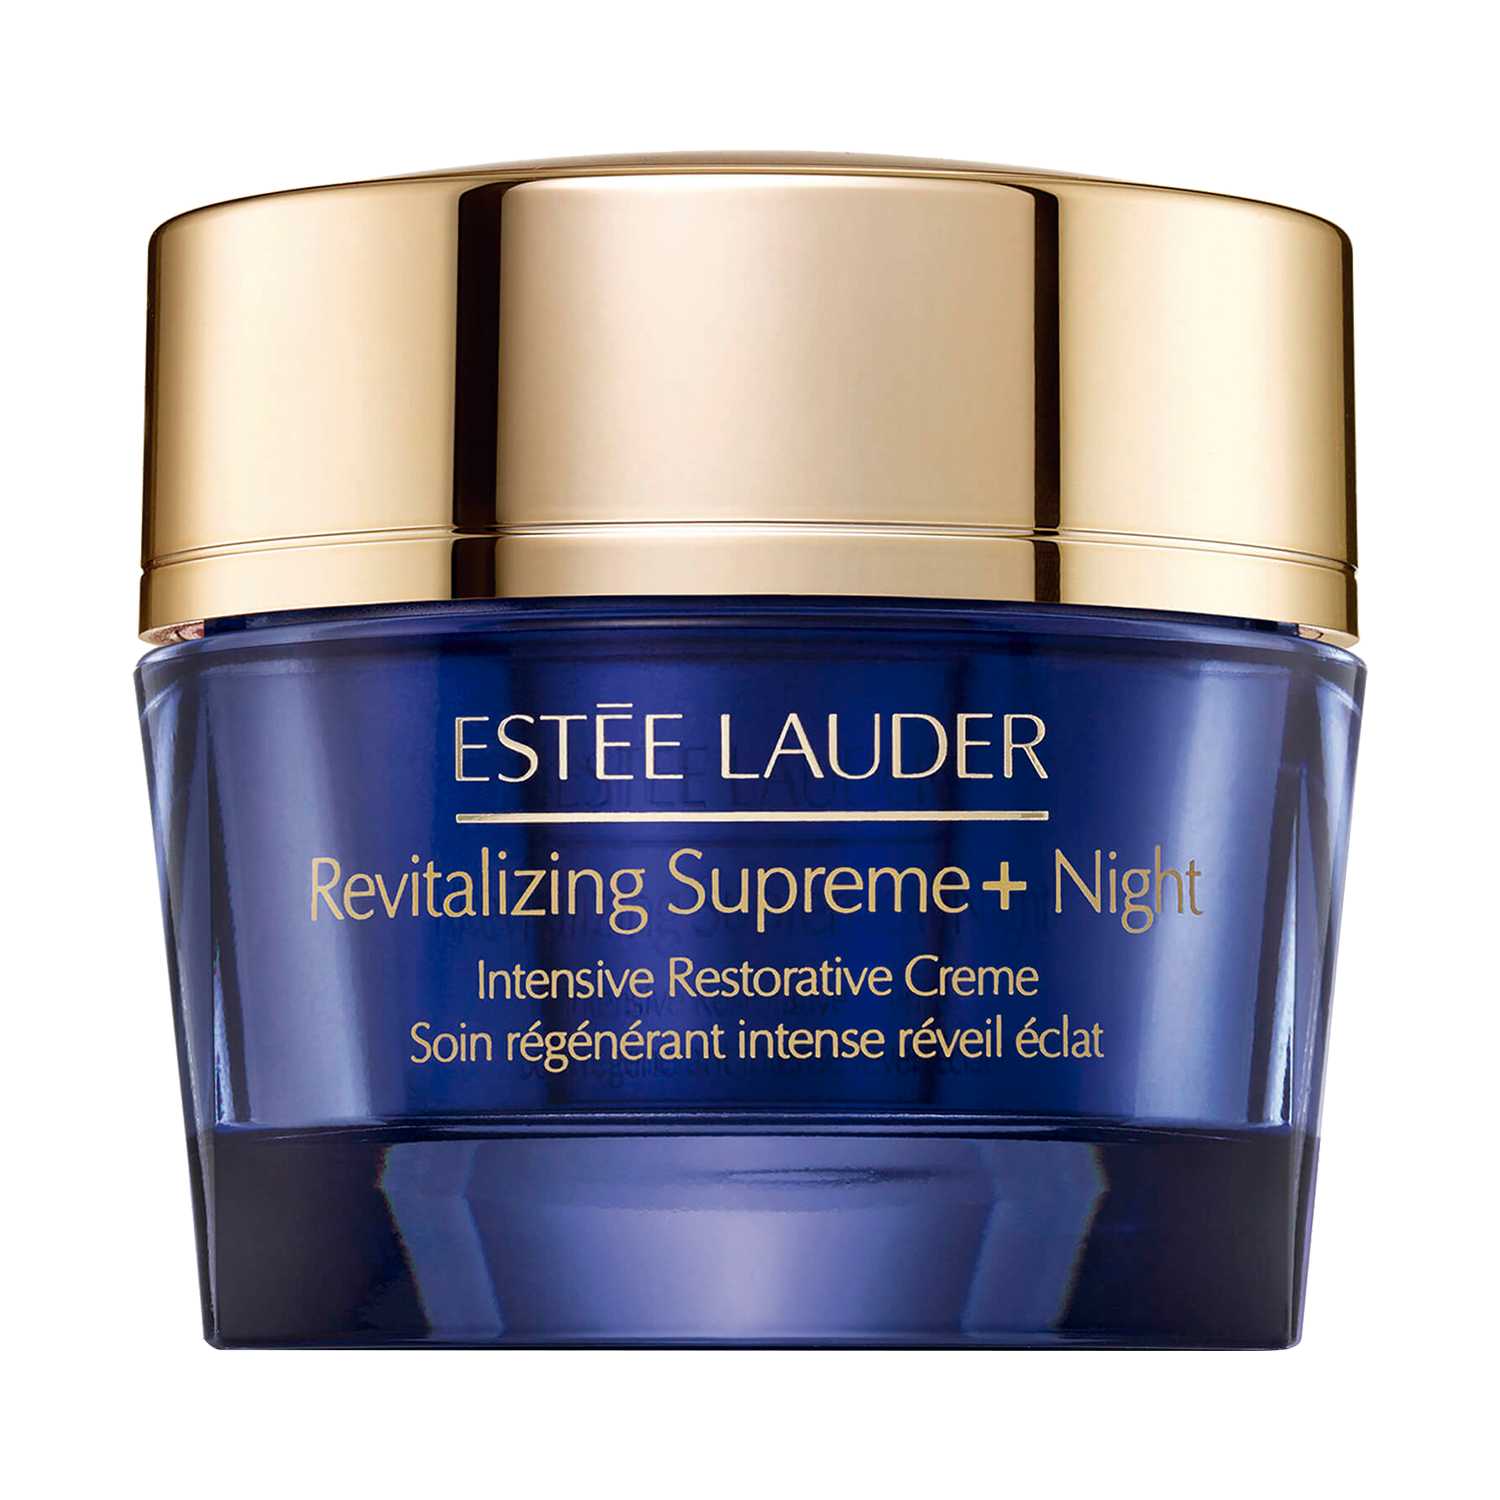 Estee Lauder Revitalizing Supreme+ Night Intensive Restorative Crème Estee Lauder Revitalizing Supreme+ Night Intensive Restorative Crème 1